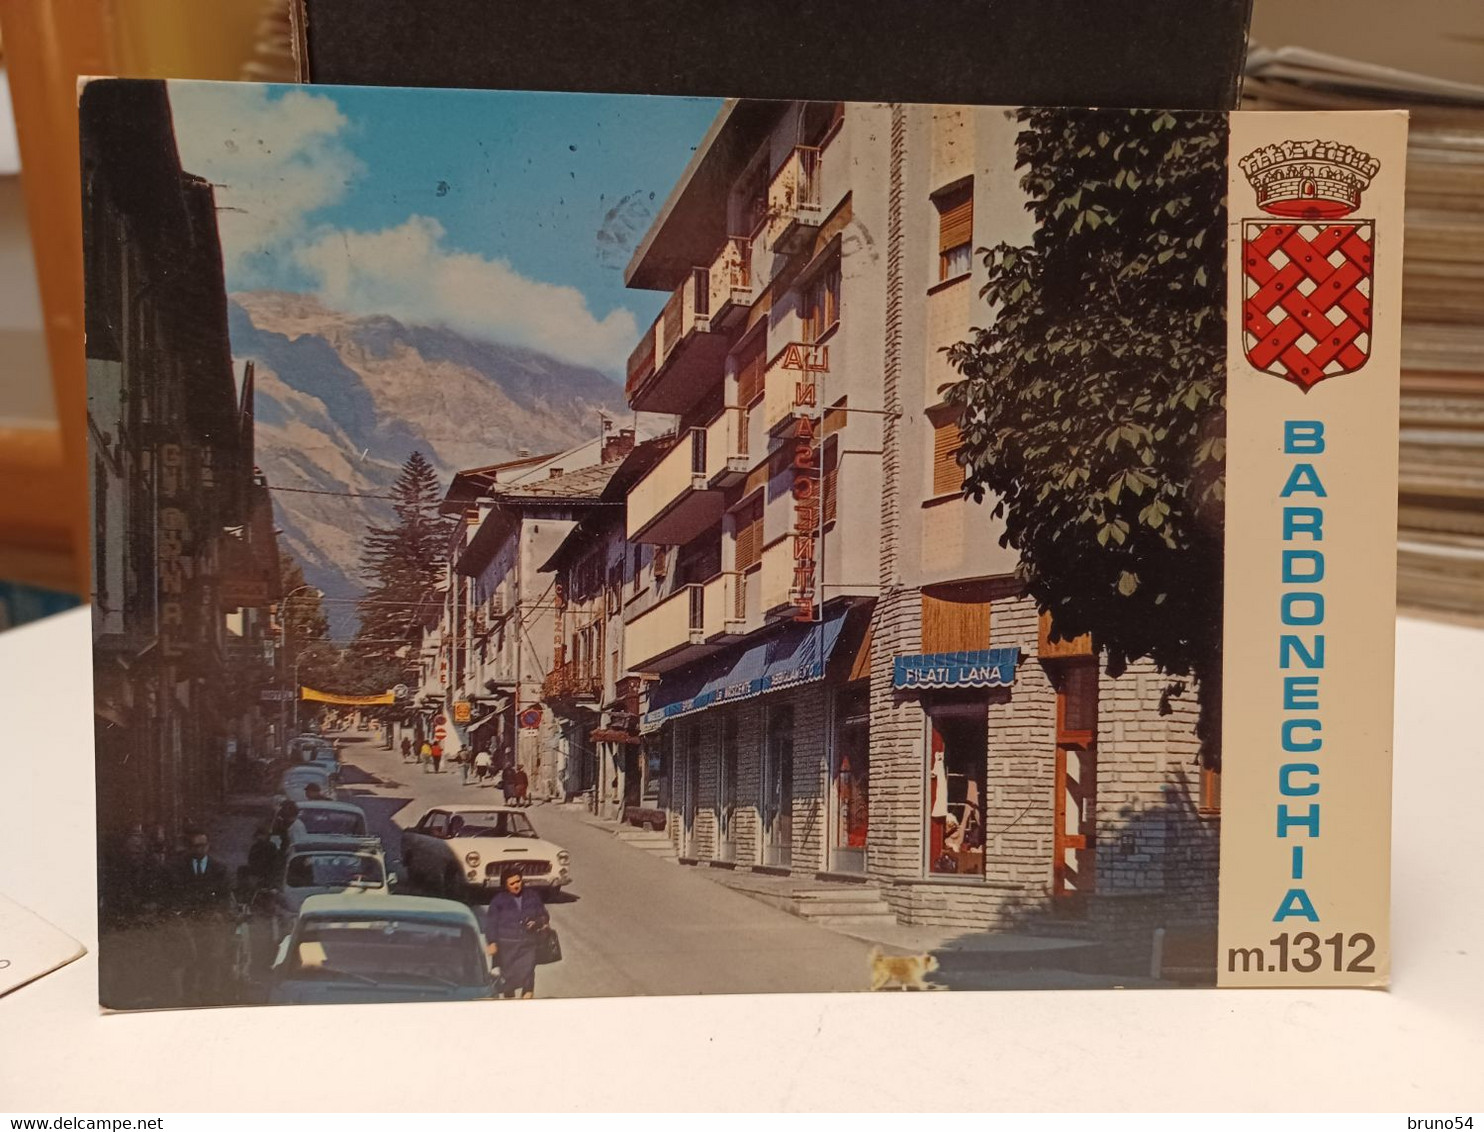 2 Cartoline Bardonecchia Provincia Di Torino Anni 70,via Medail ,rifugio Sommeiller,lago E Colle,ghiacciao E Skilift - Autres Monuments, édifices